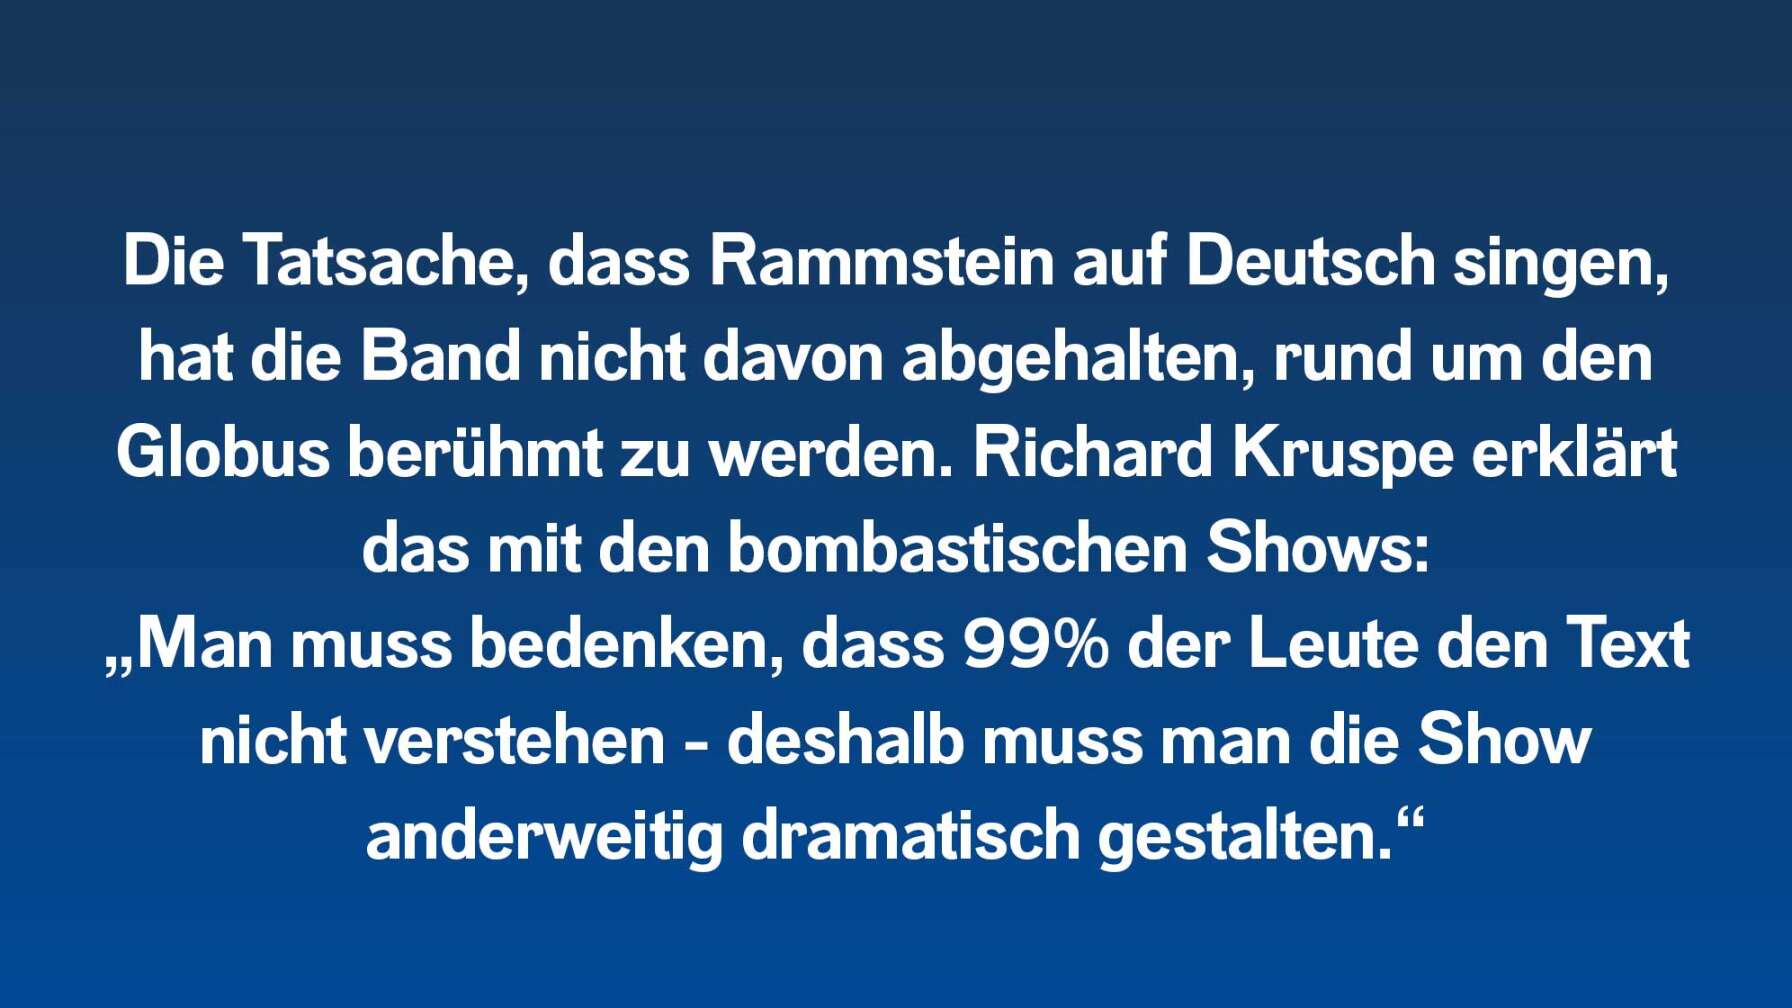 Die Tatsache, dass Rammstein auf Deutsch singen, hat die Band nicht davon abgehalten, rund um den Globus berühmt zu werden. Richard Kruspe erklärt das mit den bombastischen Shows: „Man muss bedenken, dass 99% der Leute den Text nicht verstehen - deshalb muss man die Show anderweitig dramatisch gestalten.“